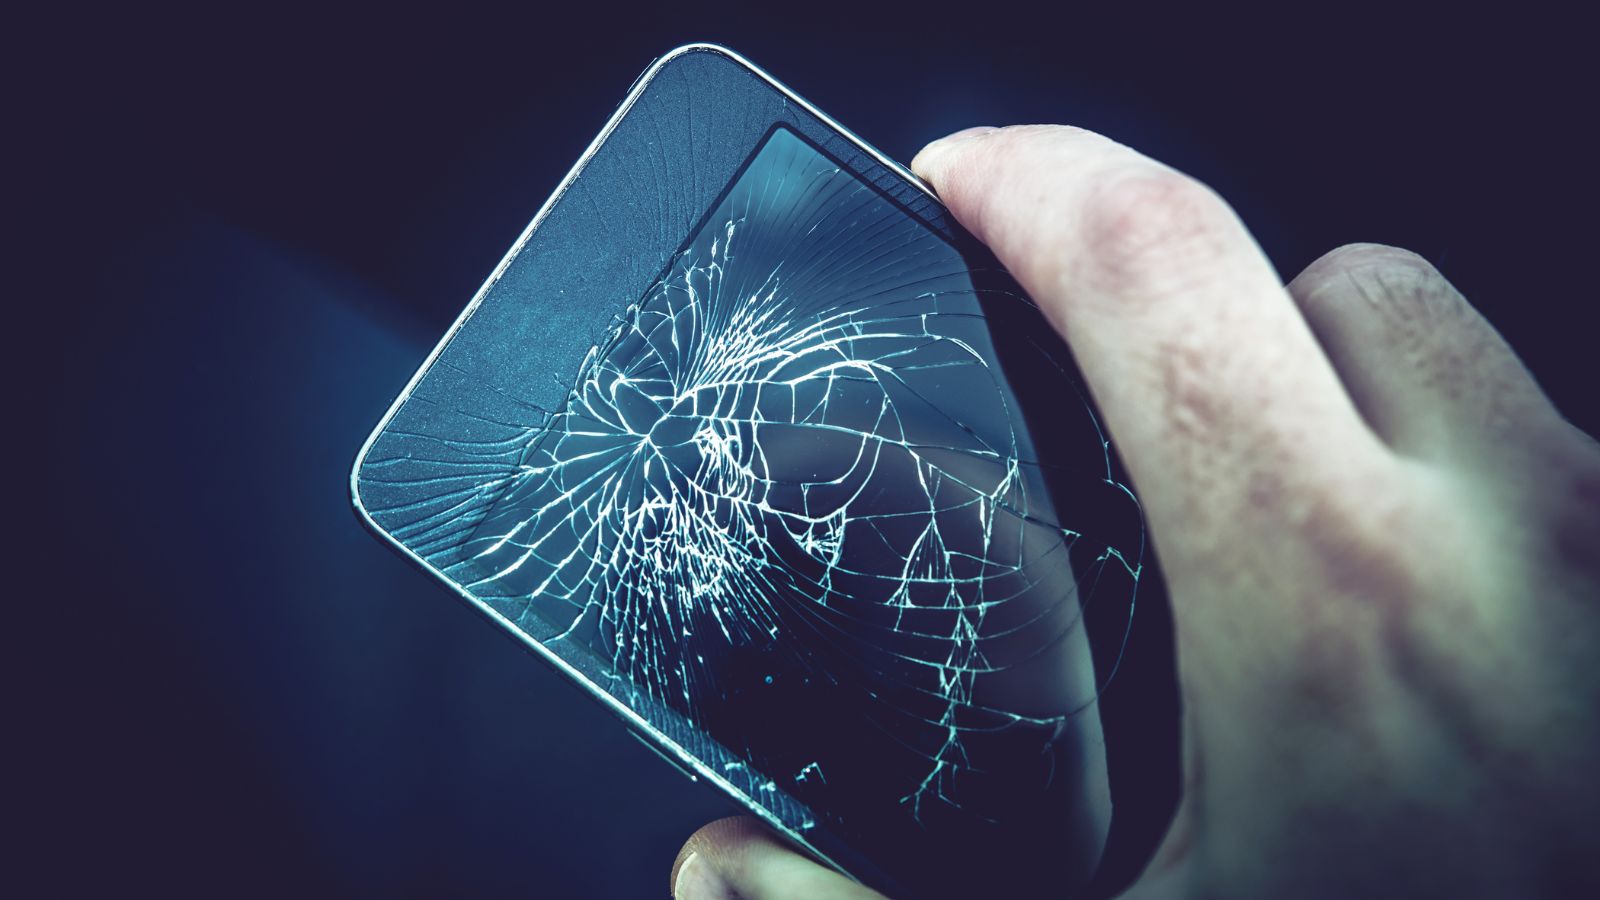 Problemi con lo smartphone: meglio sostituirlo o ripararlo? 